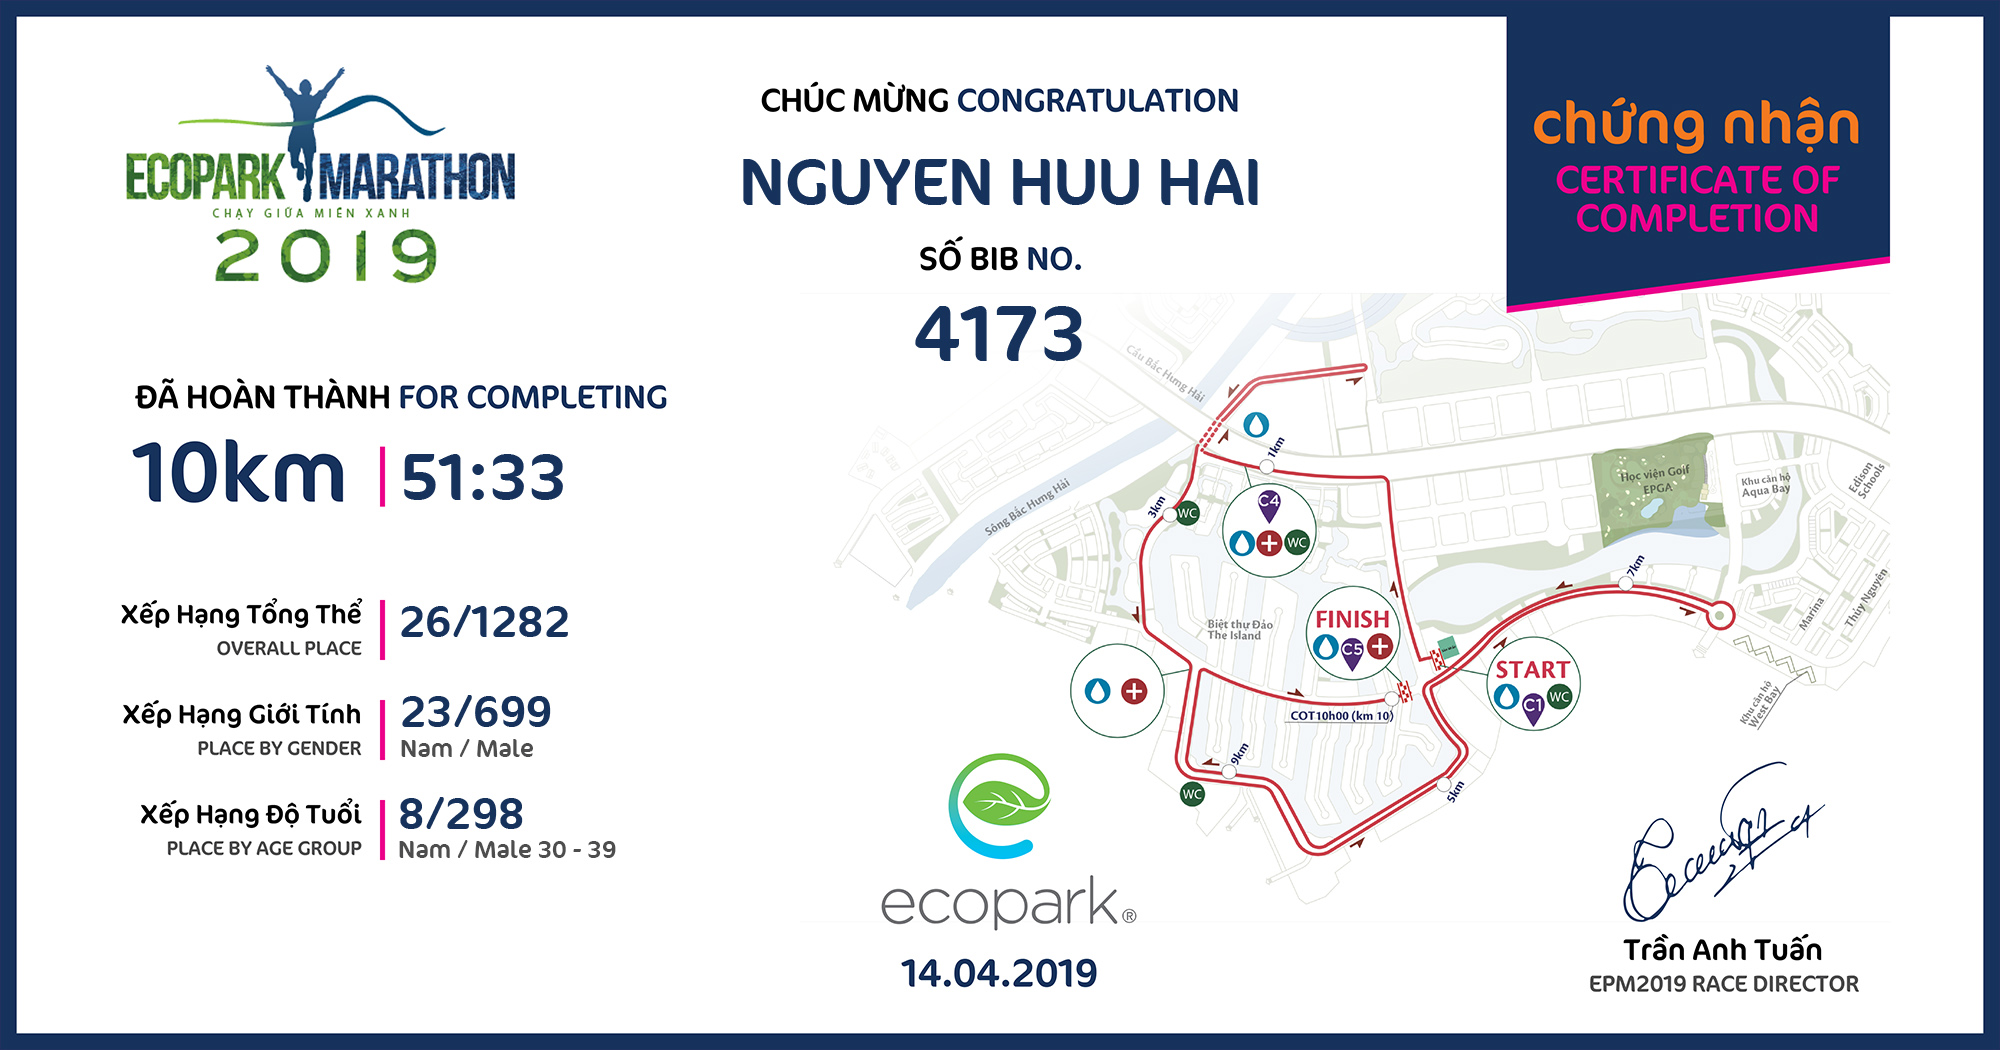 4173 - NGUYEN HUU HAI